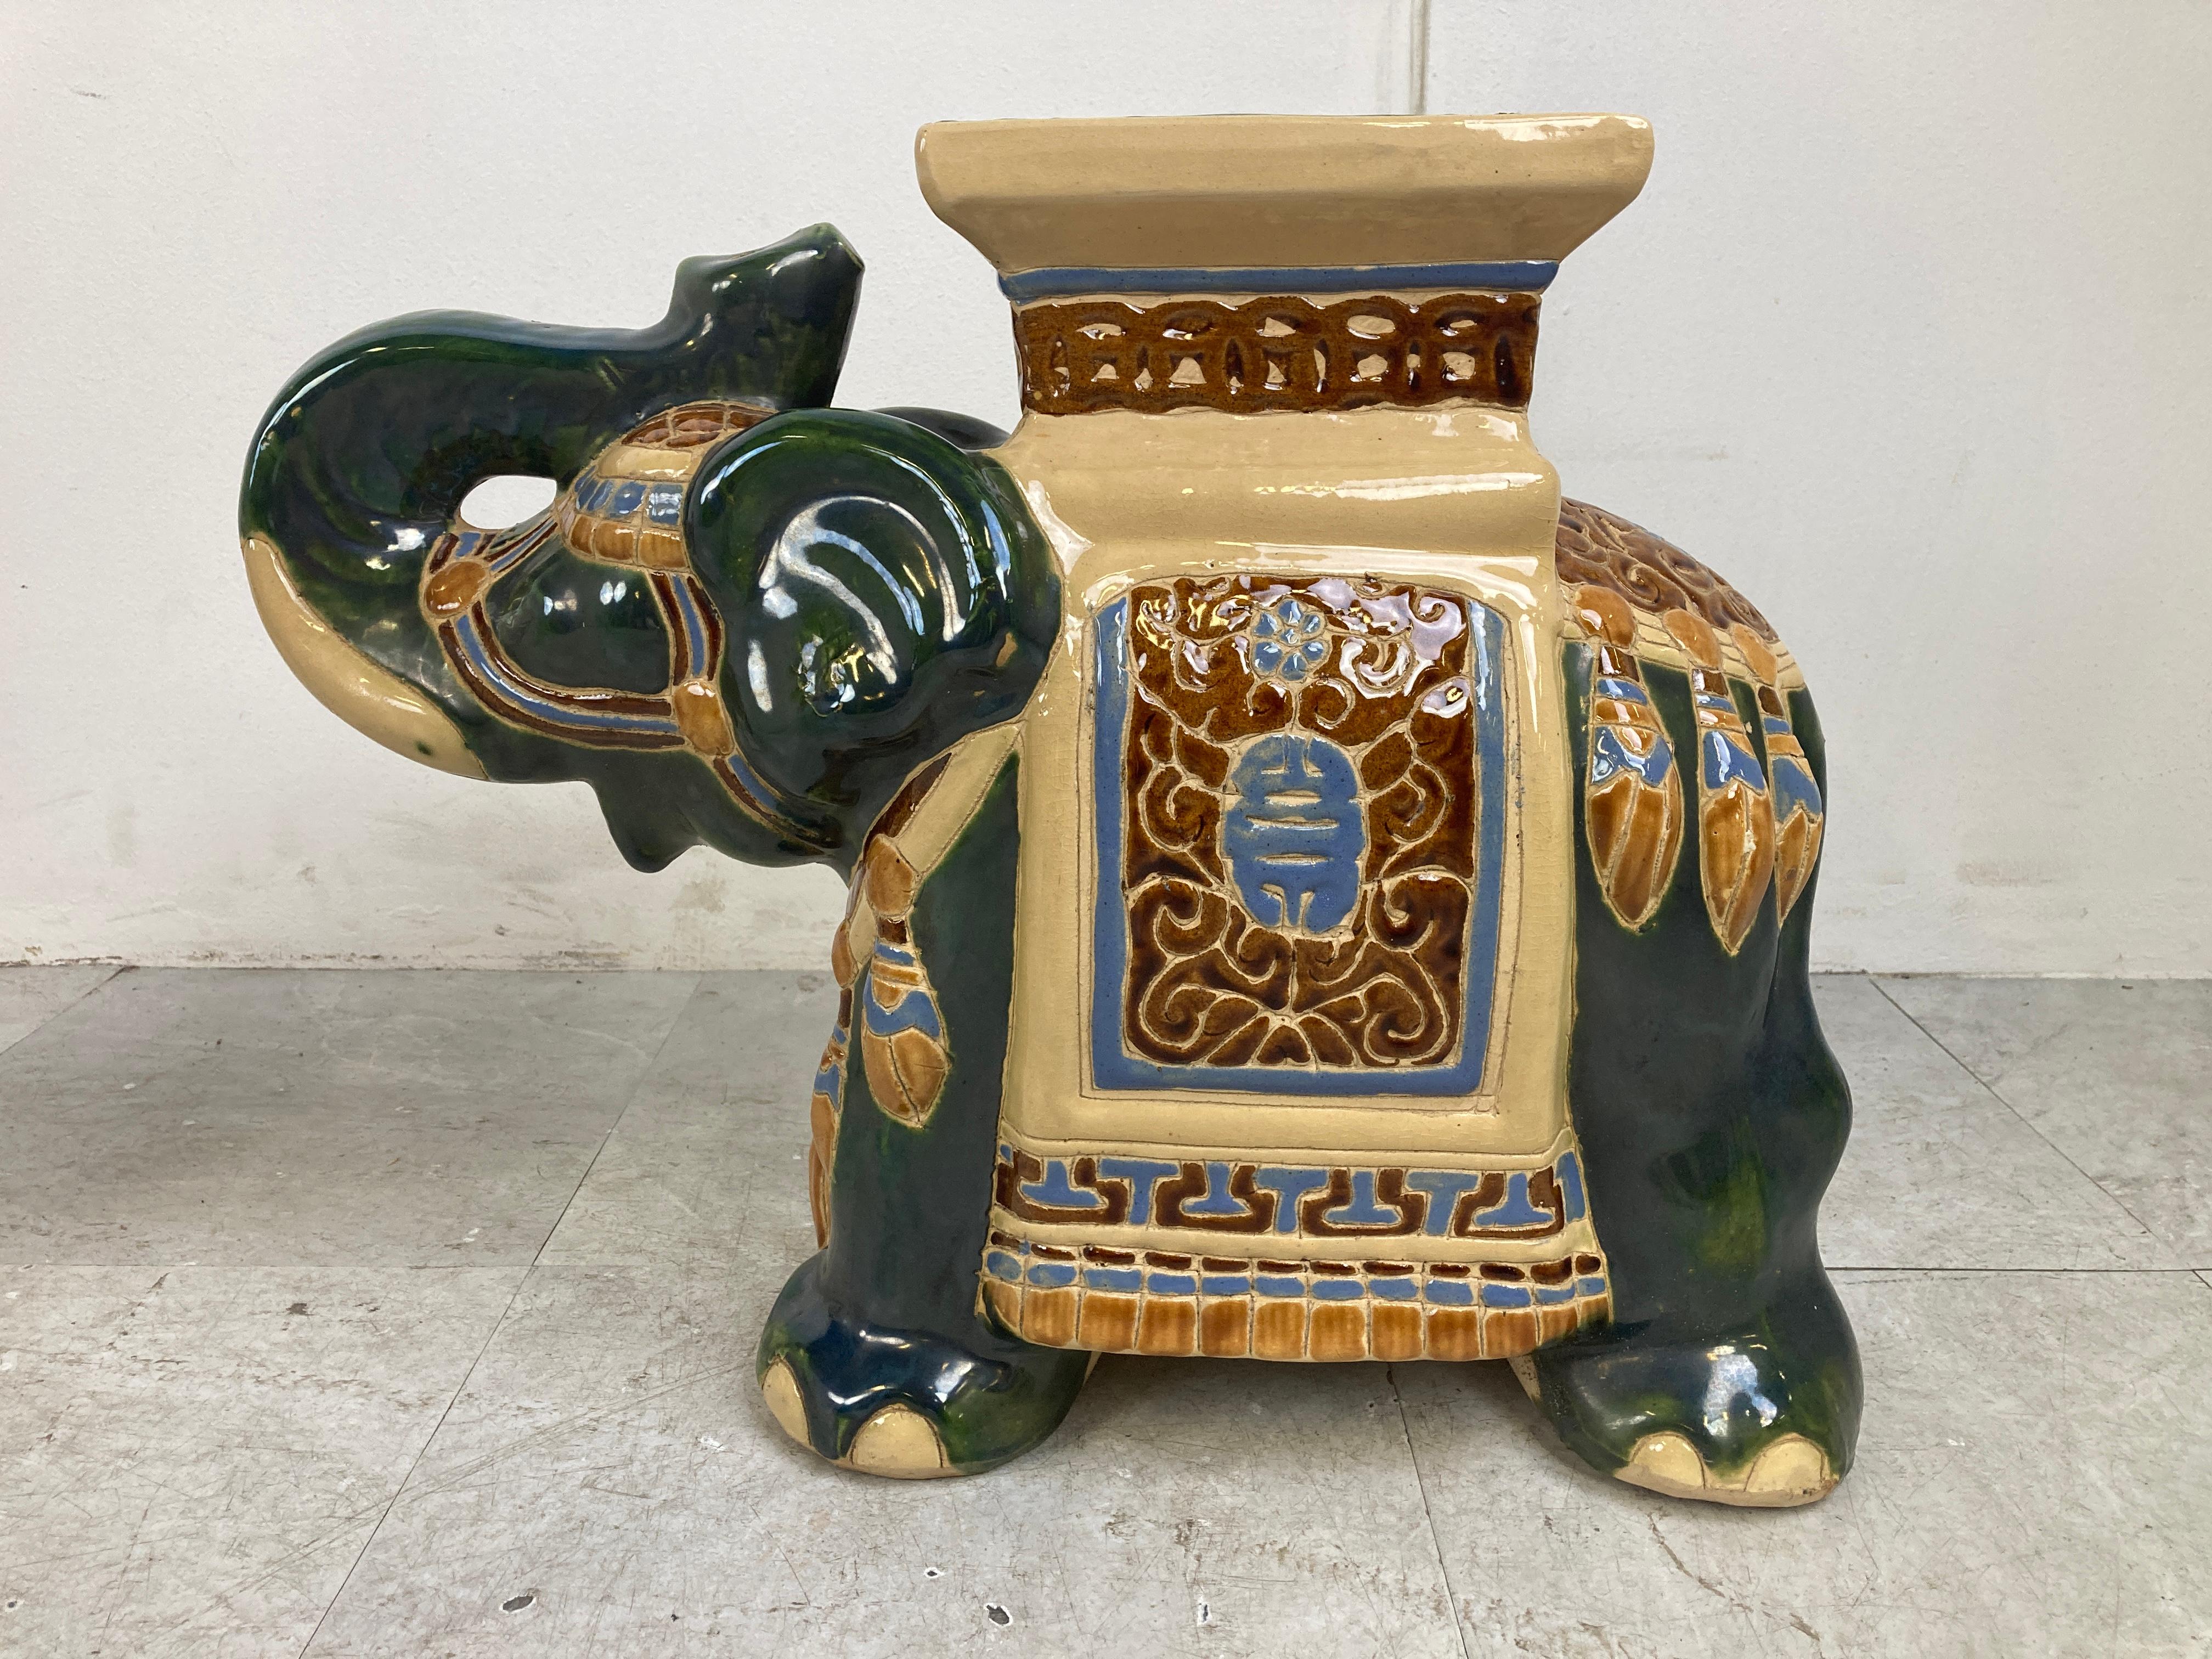 Sehr dekorativ Mitte Jahrhundert Chinoiserie glasiert  Elefanten-Pflanzenständer aus Keramik.

Can auch als kleine Beistelltische oder einfach als Dekoration verwendet werden.

Wunderschön gefärbte Keramikskulpturen, die auch als Paar gut